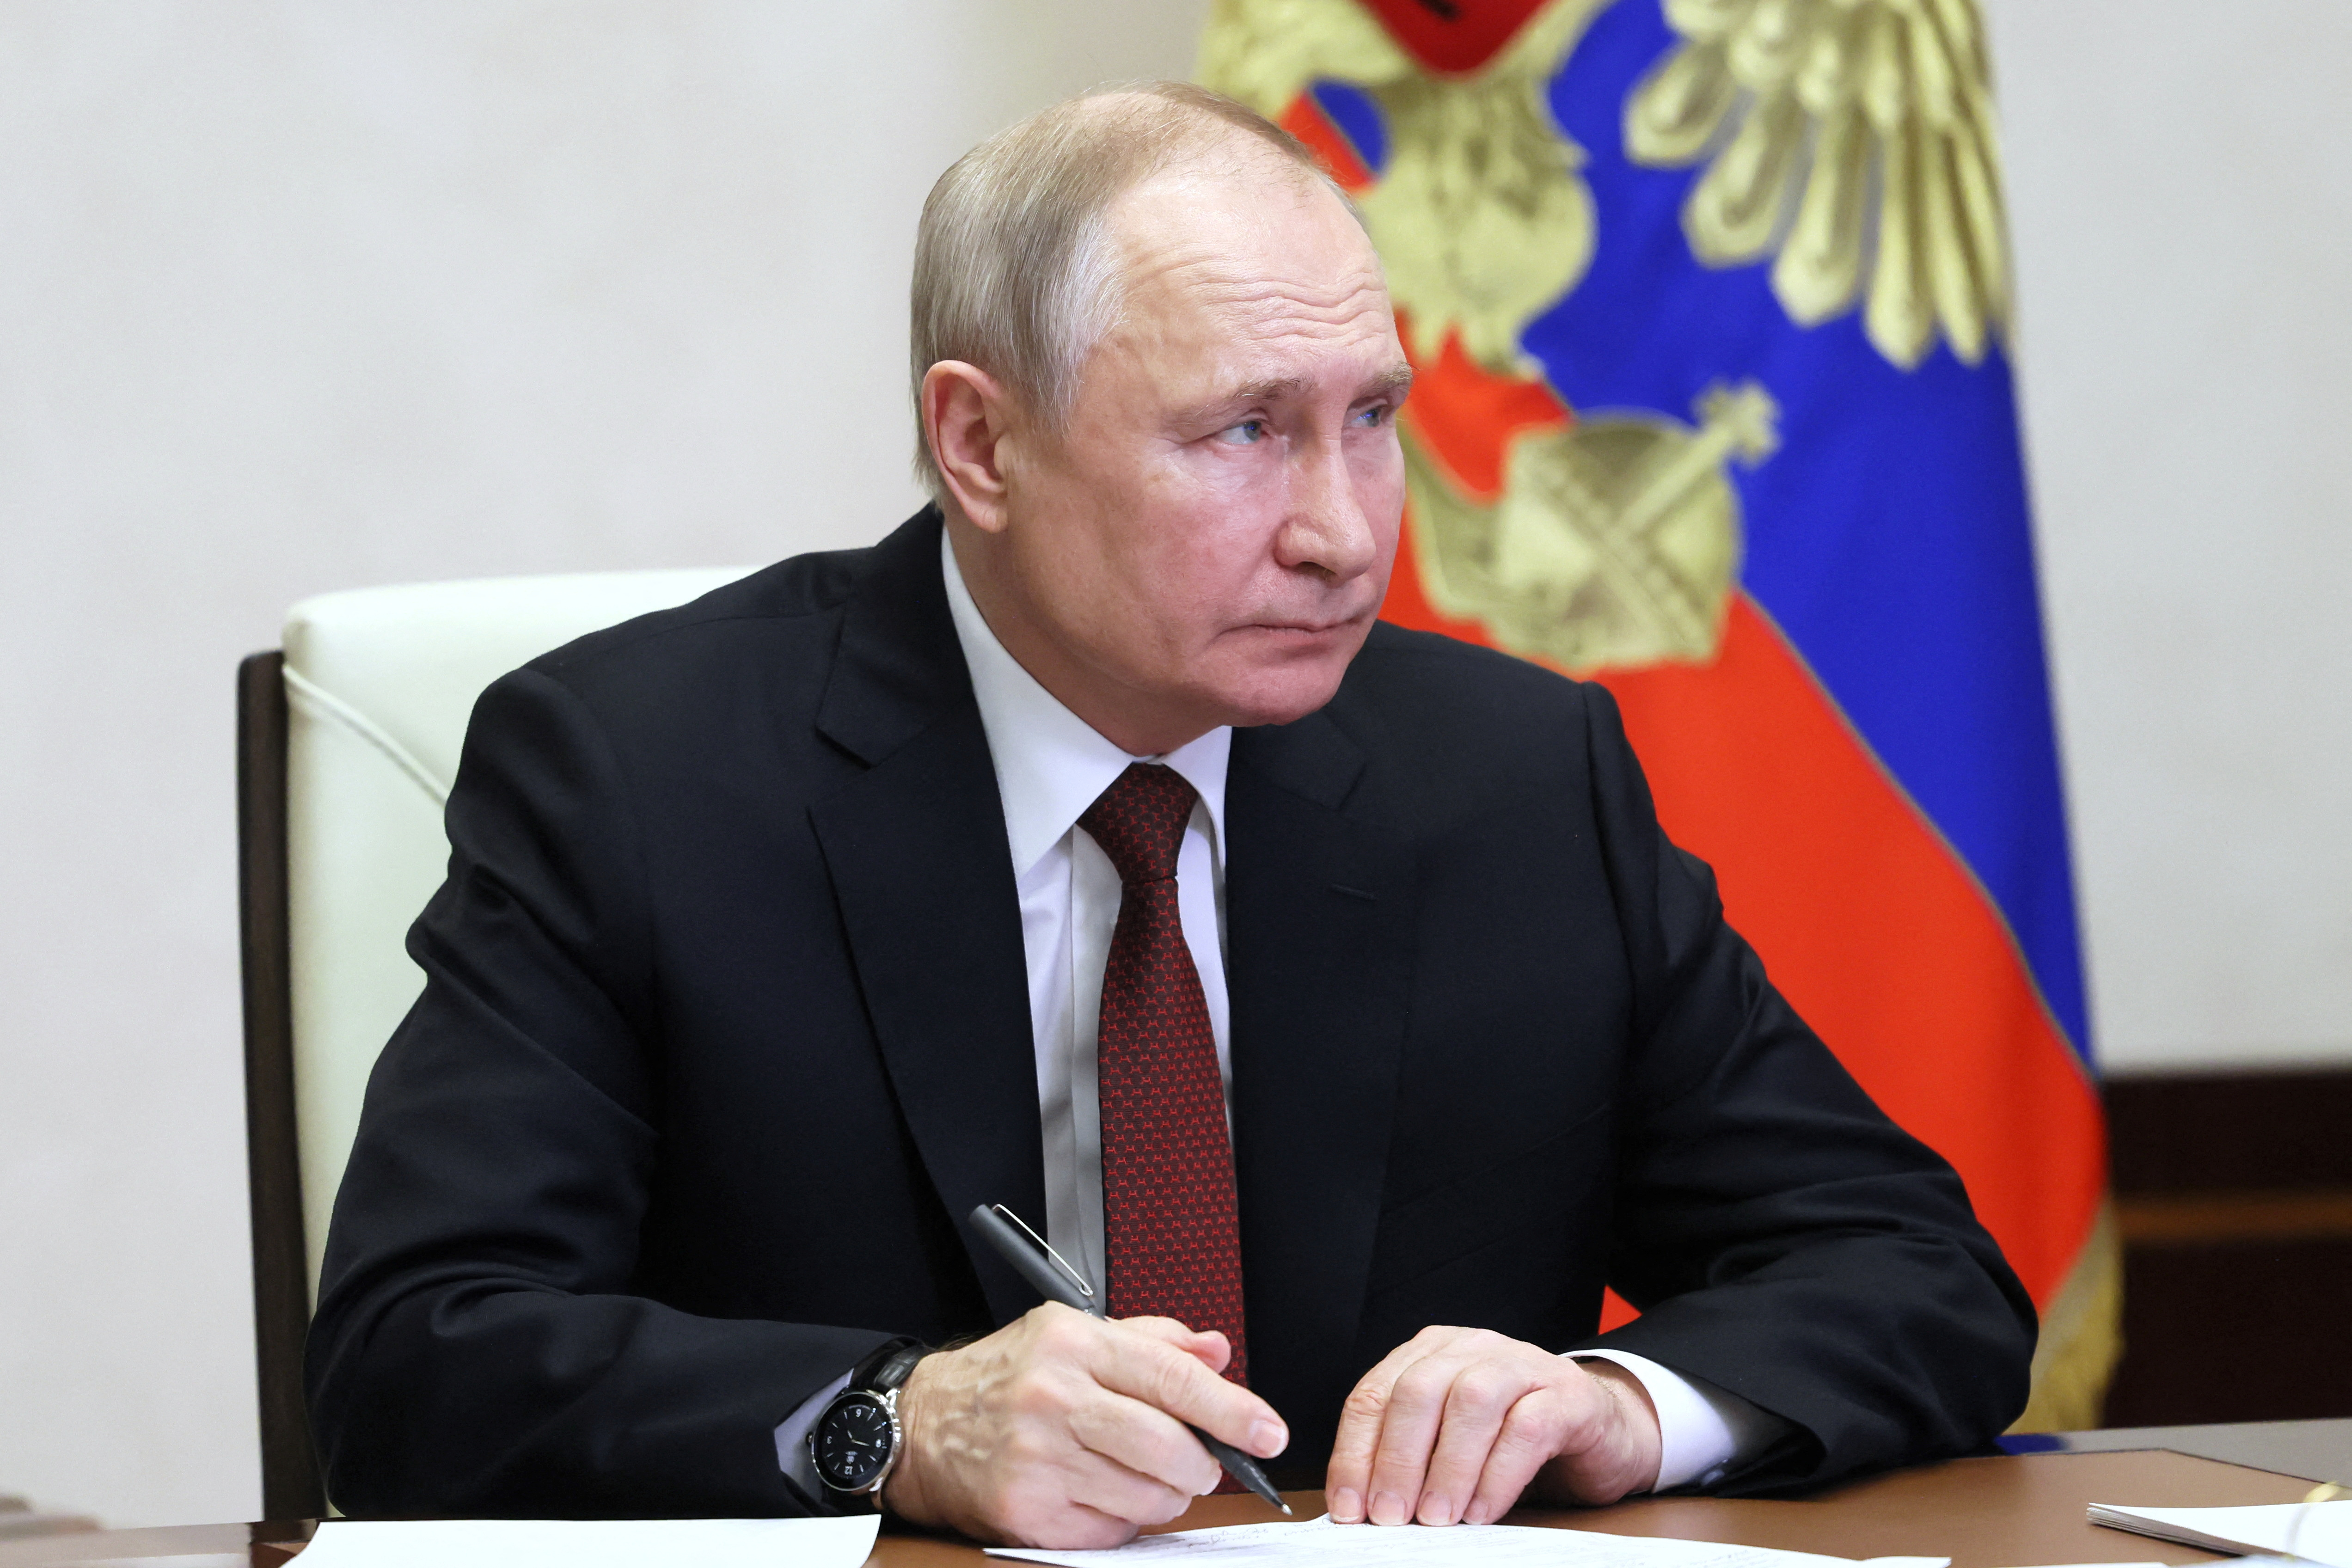 Vladimir Putin ha verbalizado la amenaza de utilizar armas nucleares (Sputnik/Mikhail Metzel/Pool via REUTERS)